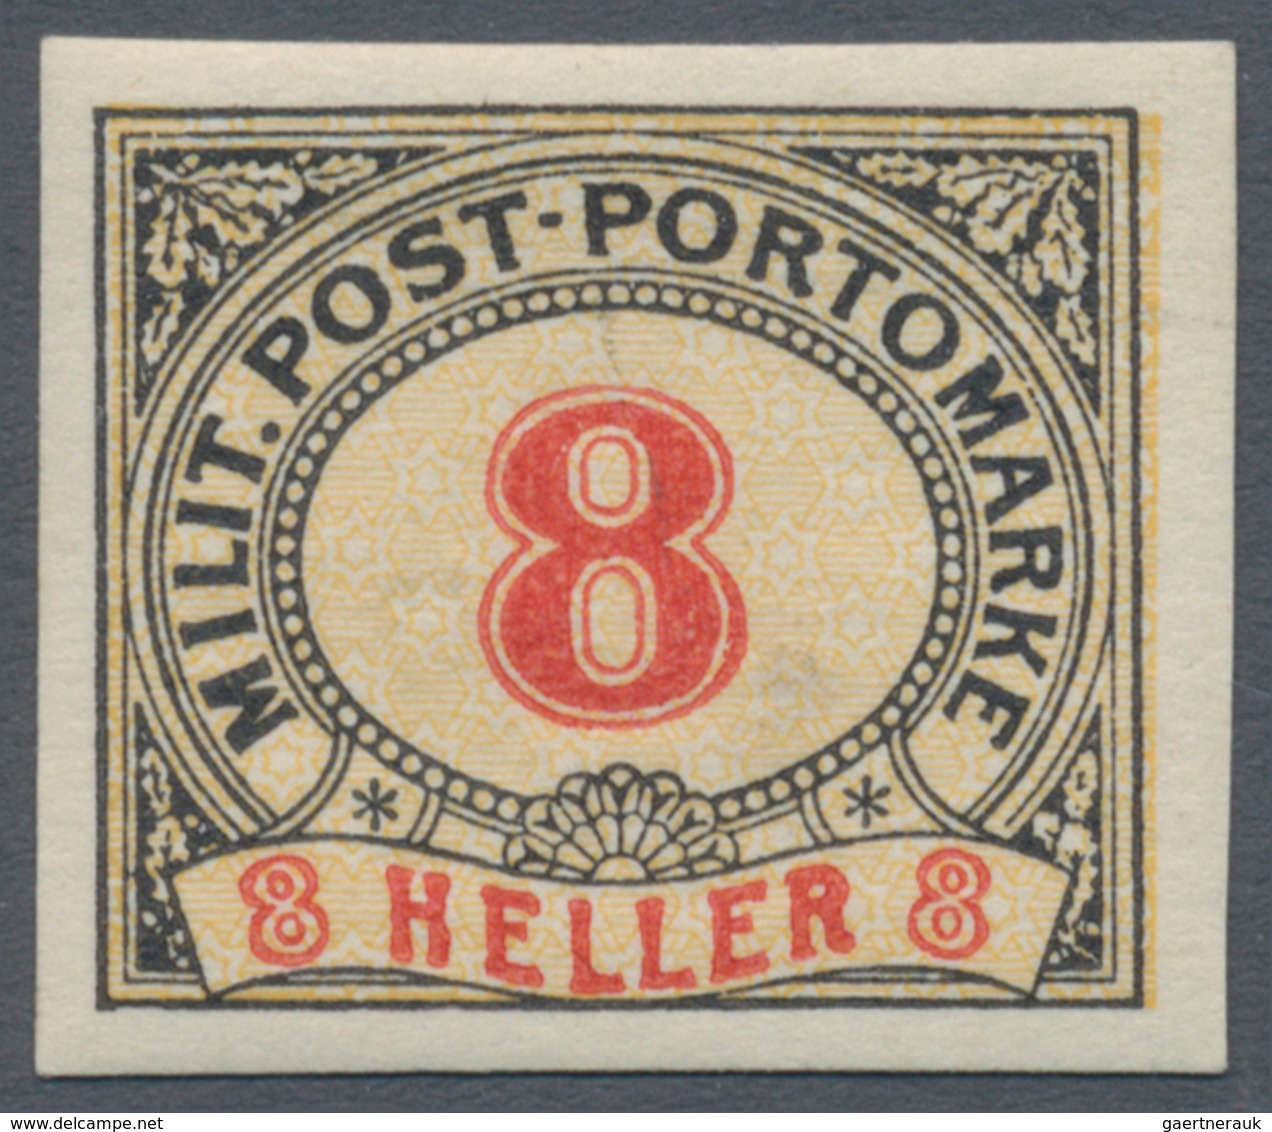 Bosnien und Herzegowina (Österreich 1879/1918): 1904, Ziffern-Portomarken 1 H bis 200 H kompletter U